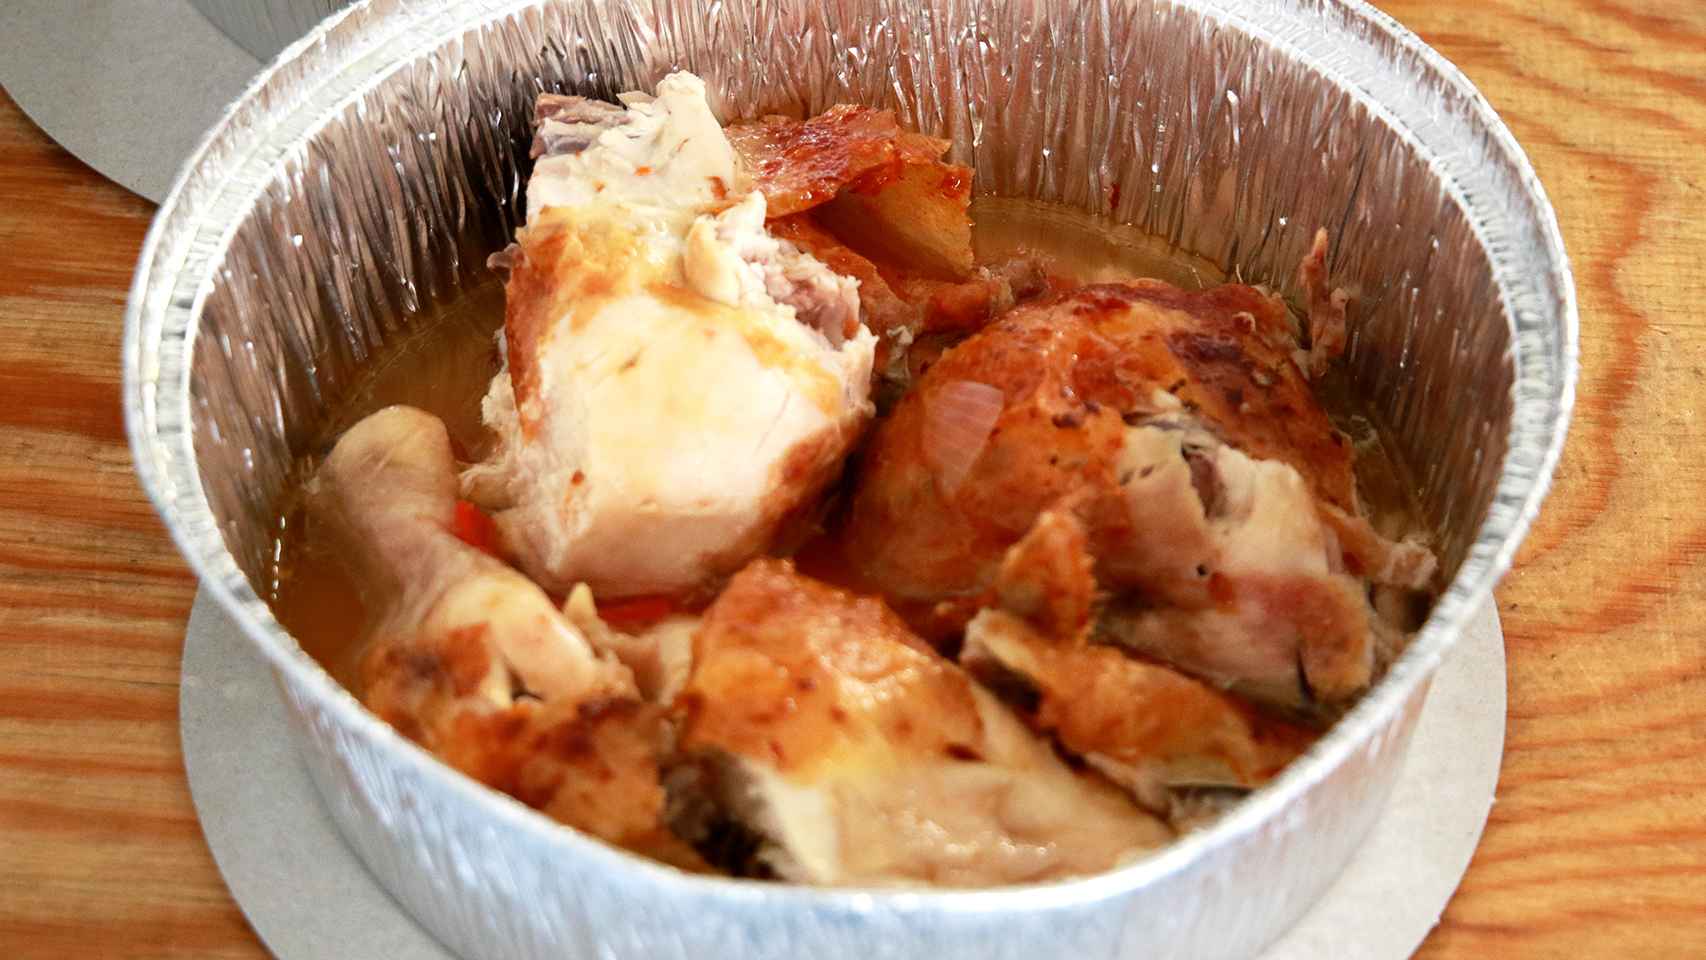 Medio pollo asado de Casa Galván. La unidad cuesta 7,95 euros.